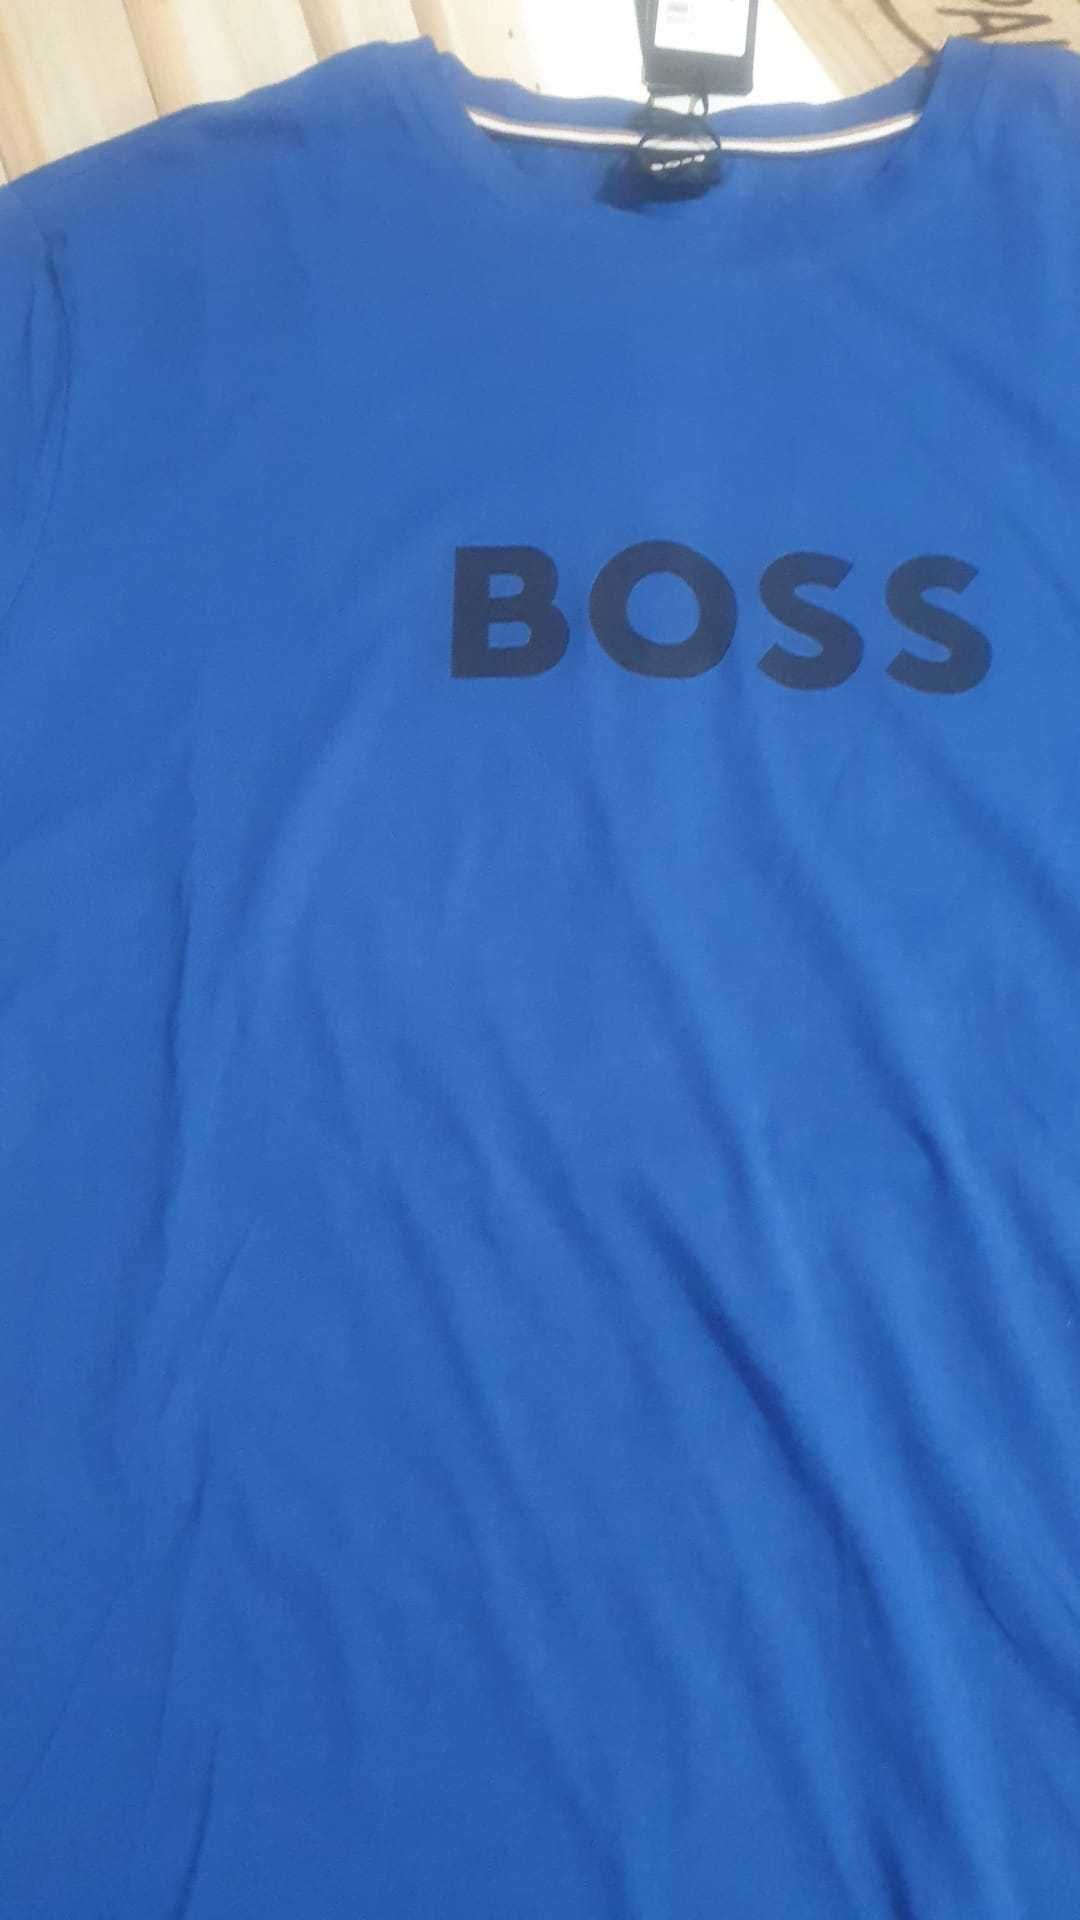 Vand tricou barbati Hugo Boss masura XL si XXL original cu eticheta.